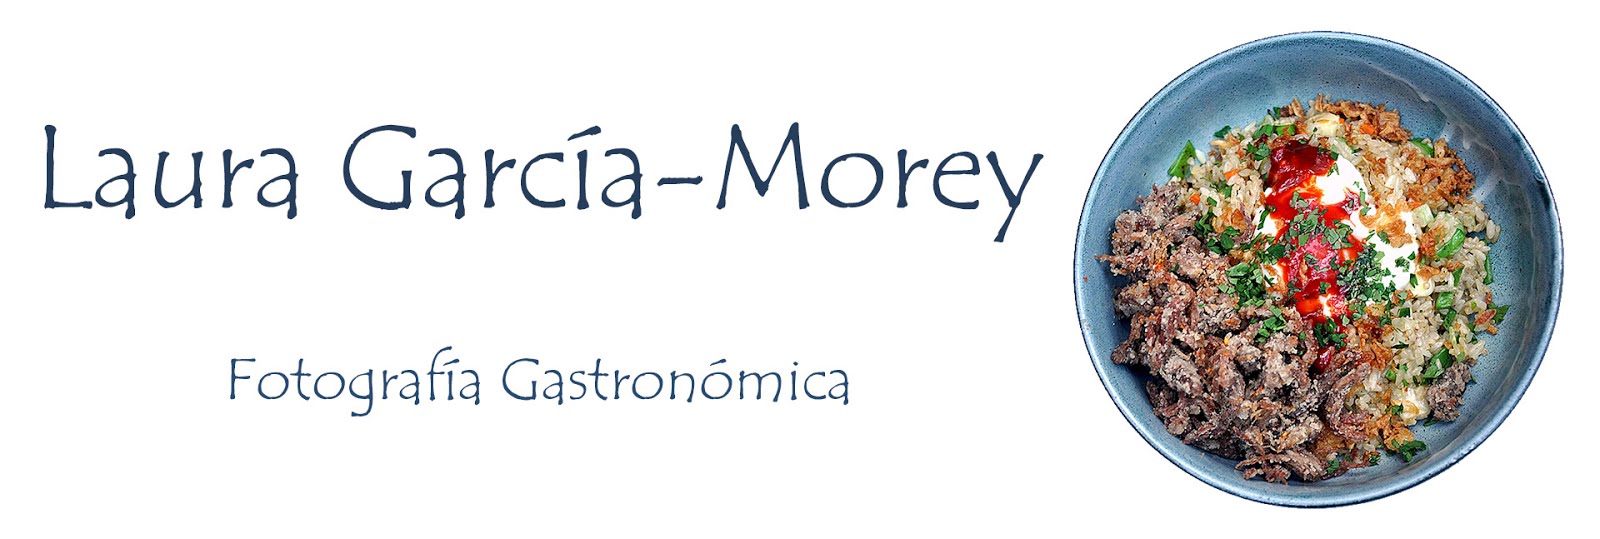 Laura García-Morey